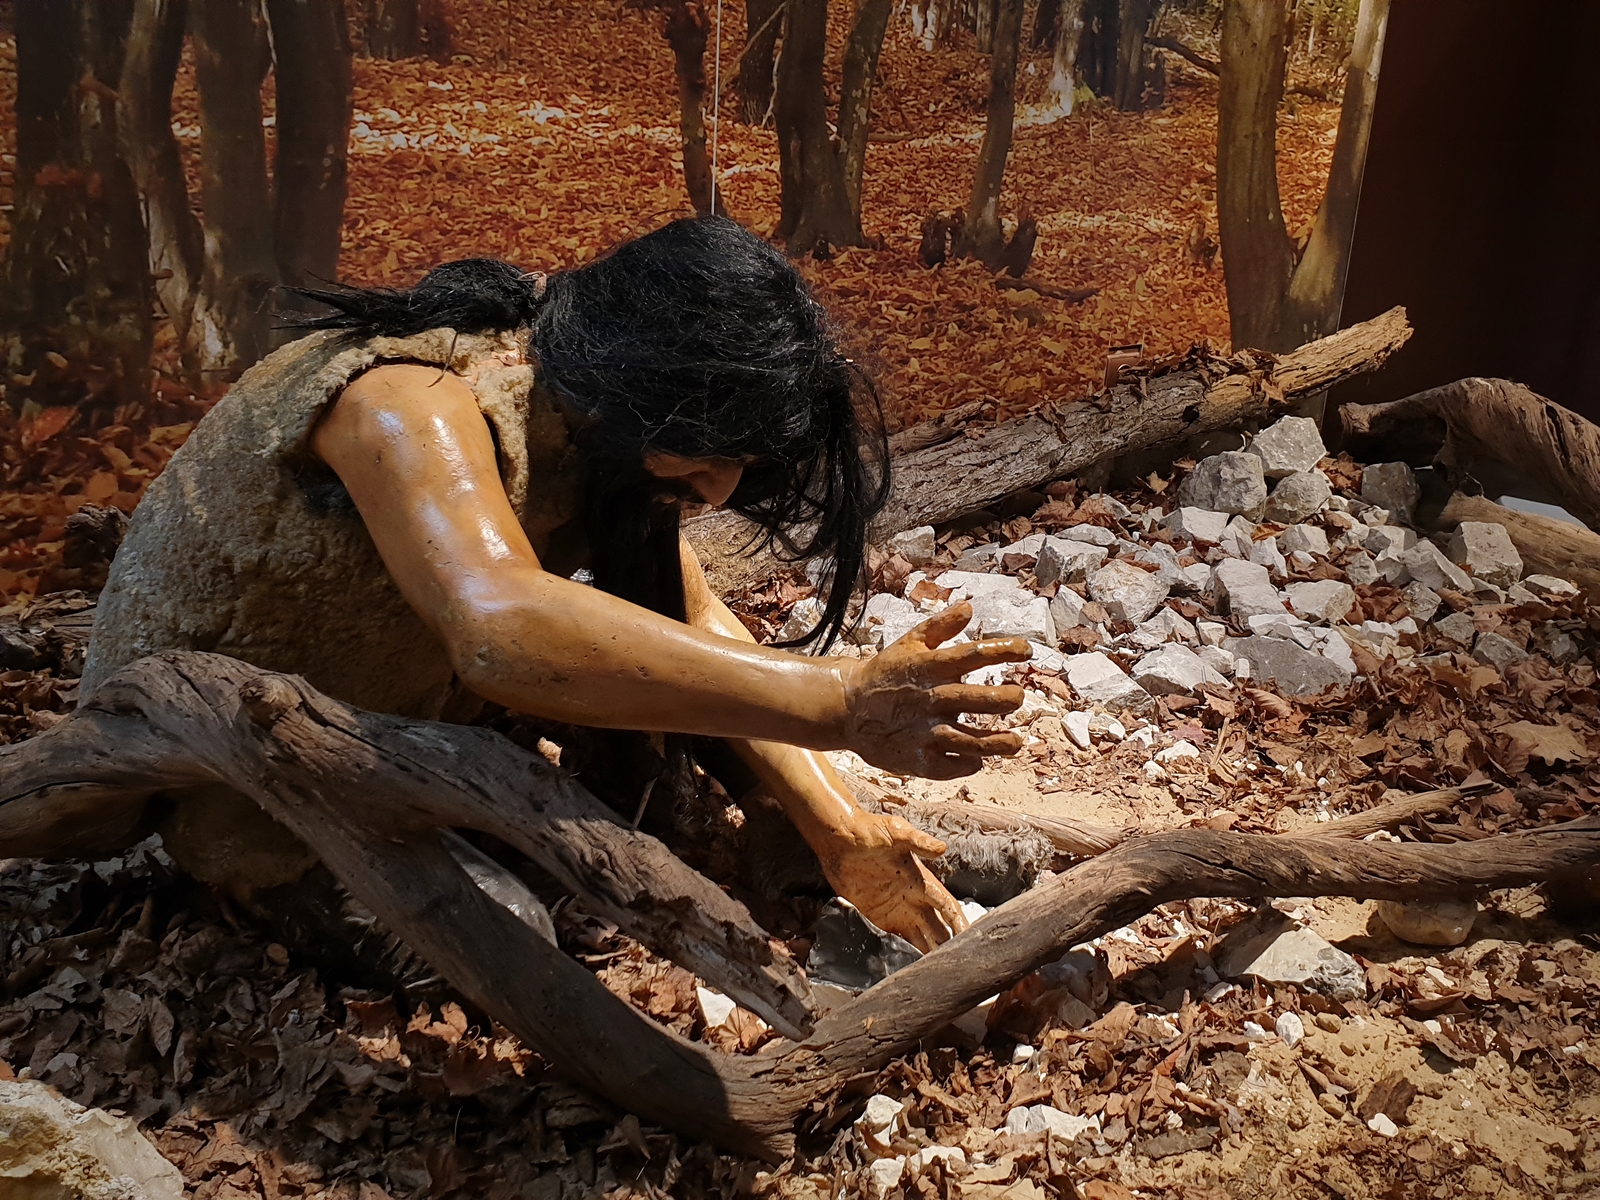 Model dawnego mieszkańca w skórze, sięgającego po kawałek drewna, fragment wystawy w Krzemionkach Opatowskich.